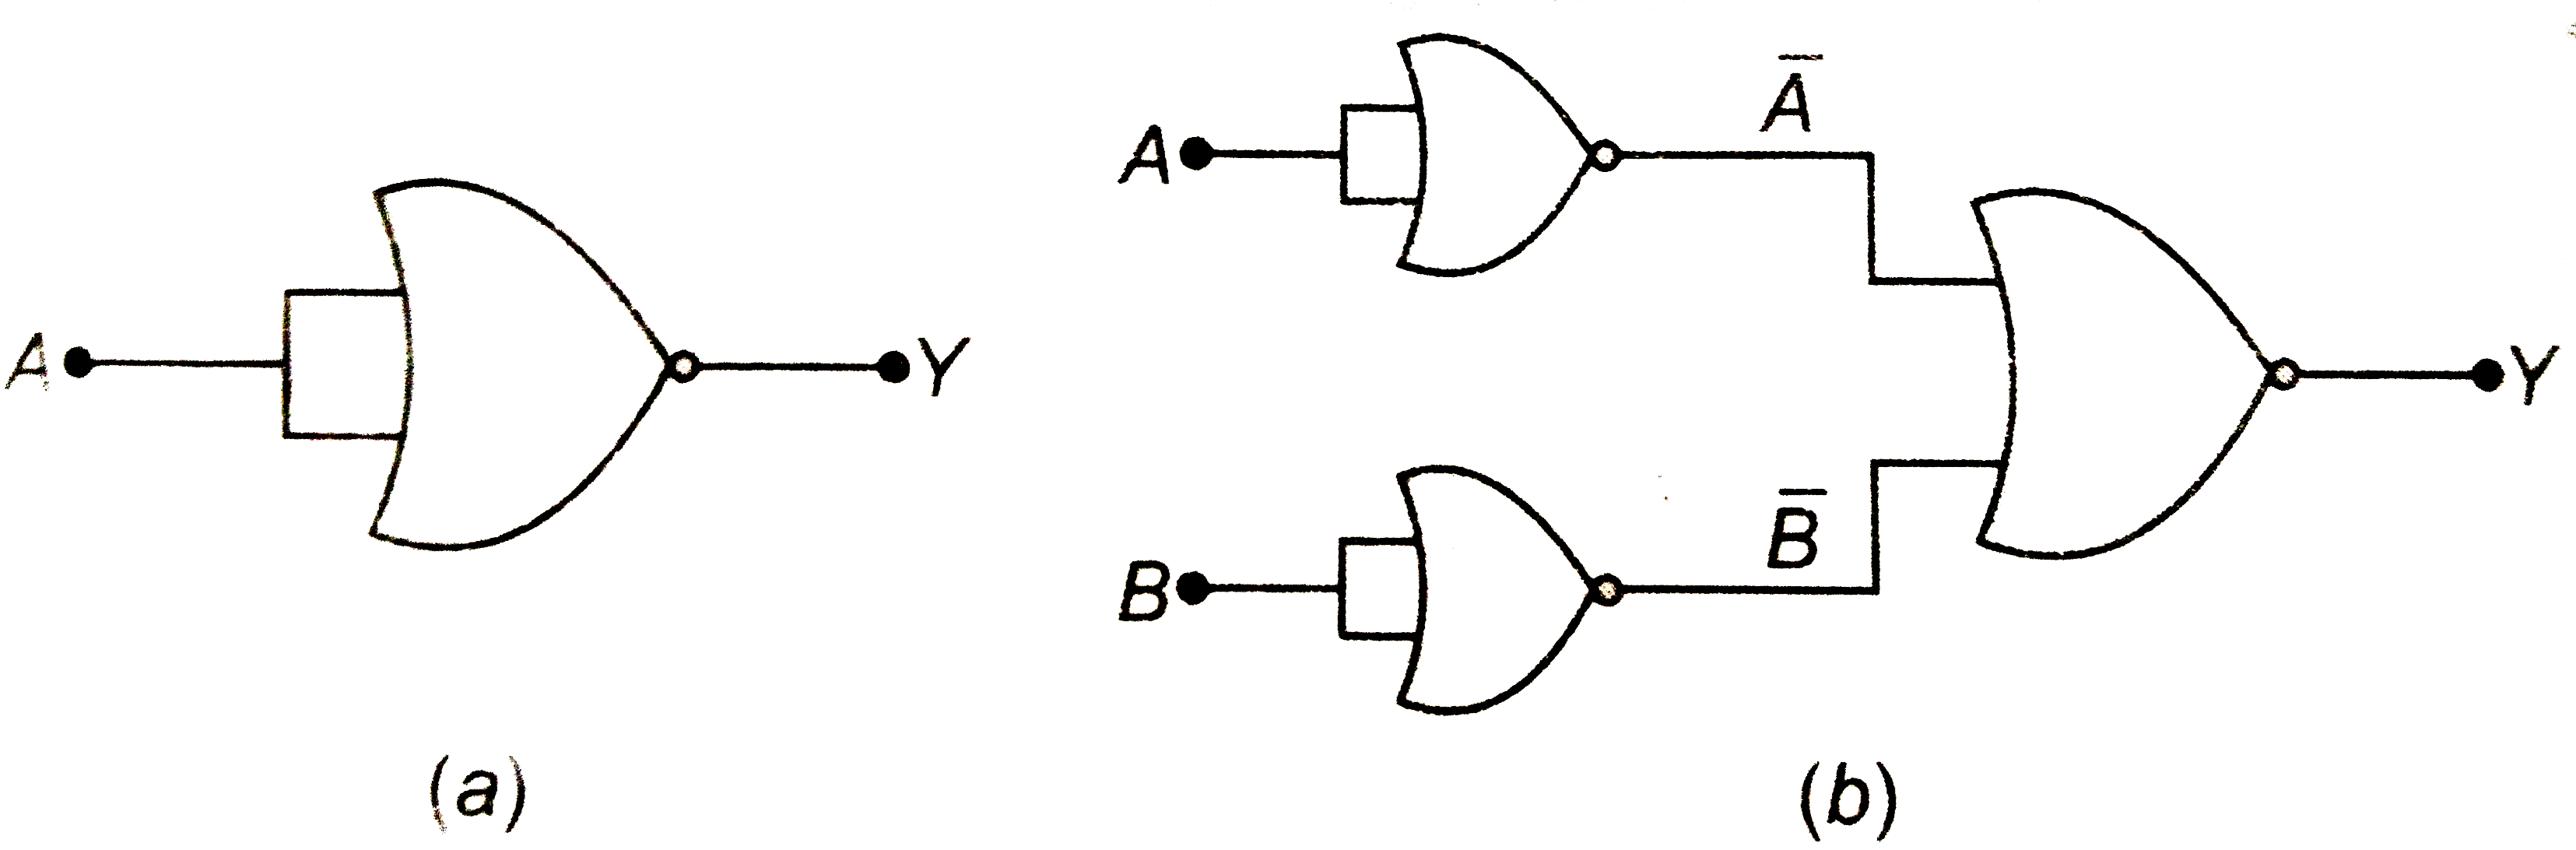 चित्र में दर्शाए गए केवल NOR गेटों से बने परिपथ को सत्यमान सारणी बनाइए। दोनों परिपथों द्वारा अनुपालित तर्क संक्रियाओं (OR , AND , NOT ) को अभिनिर्धारित कीजिए।